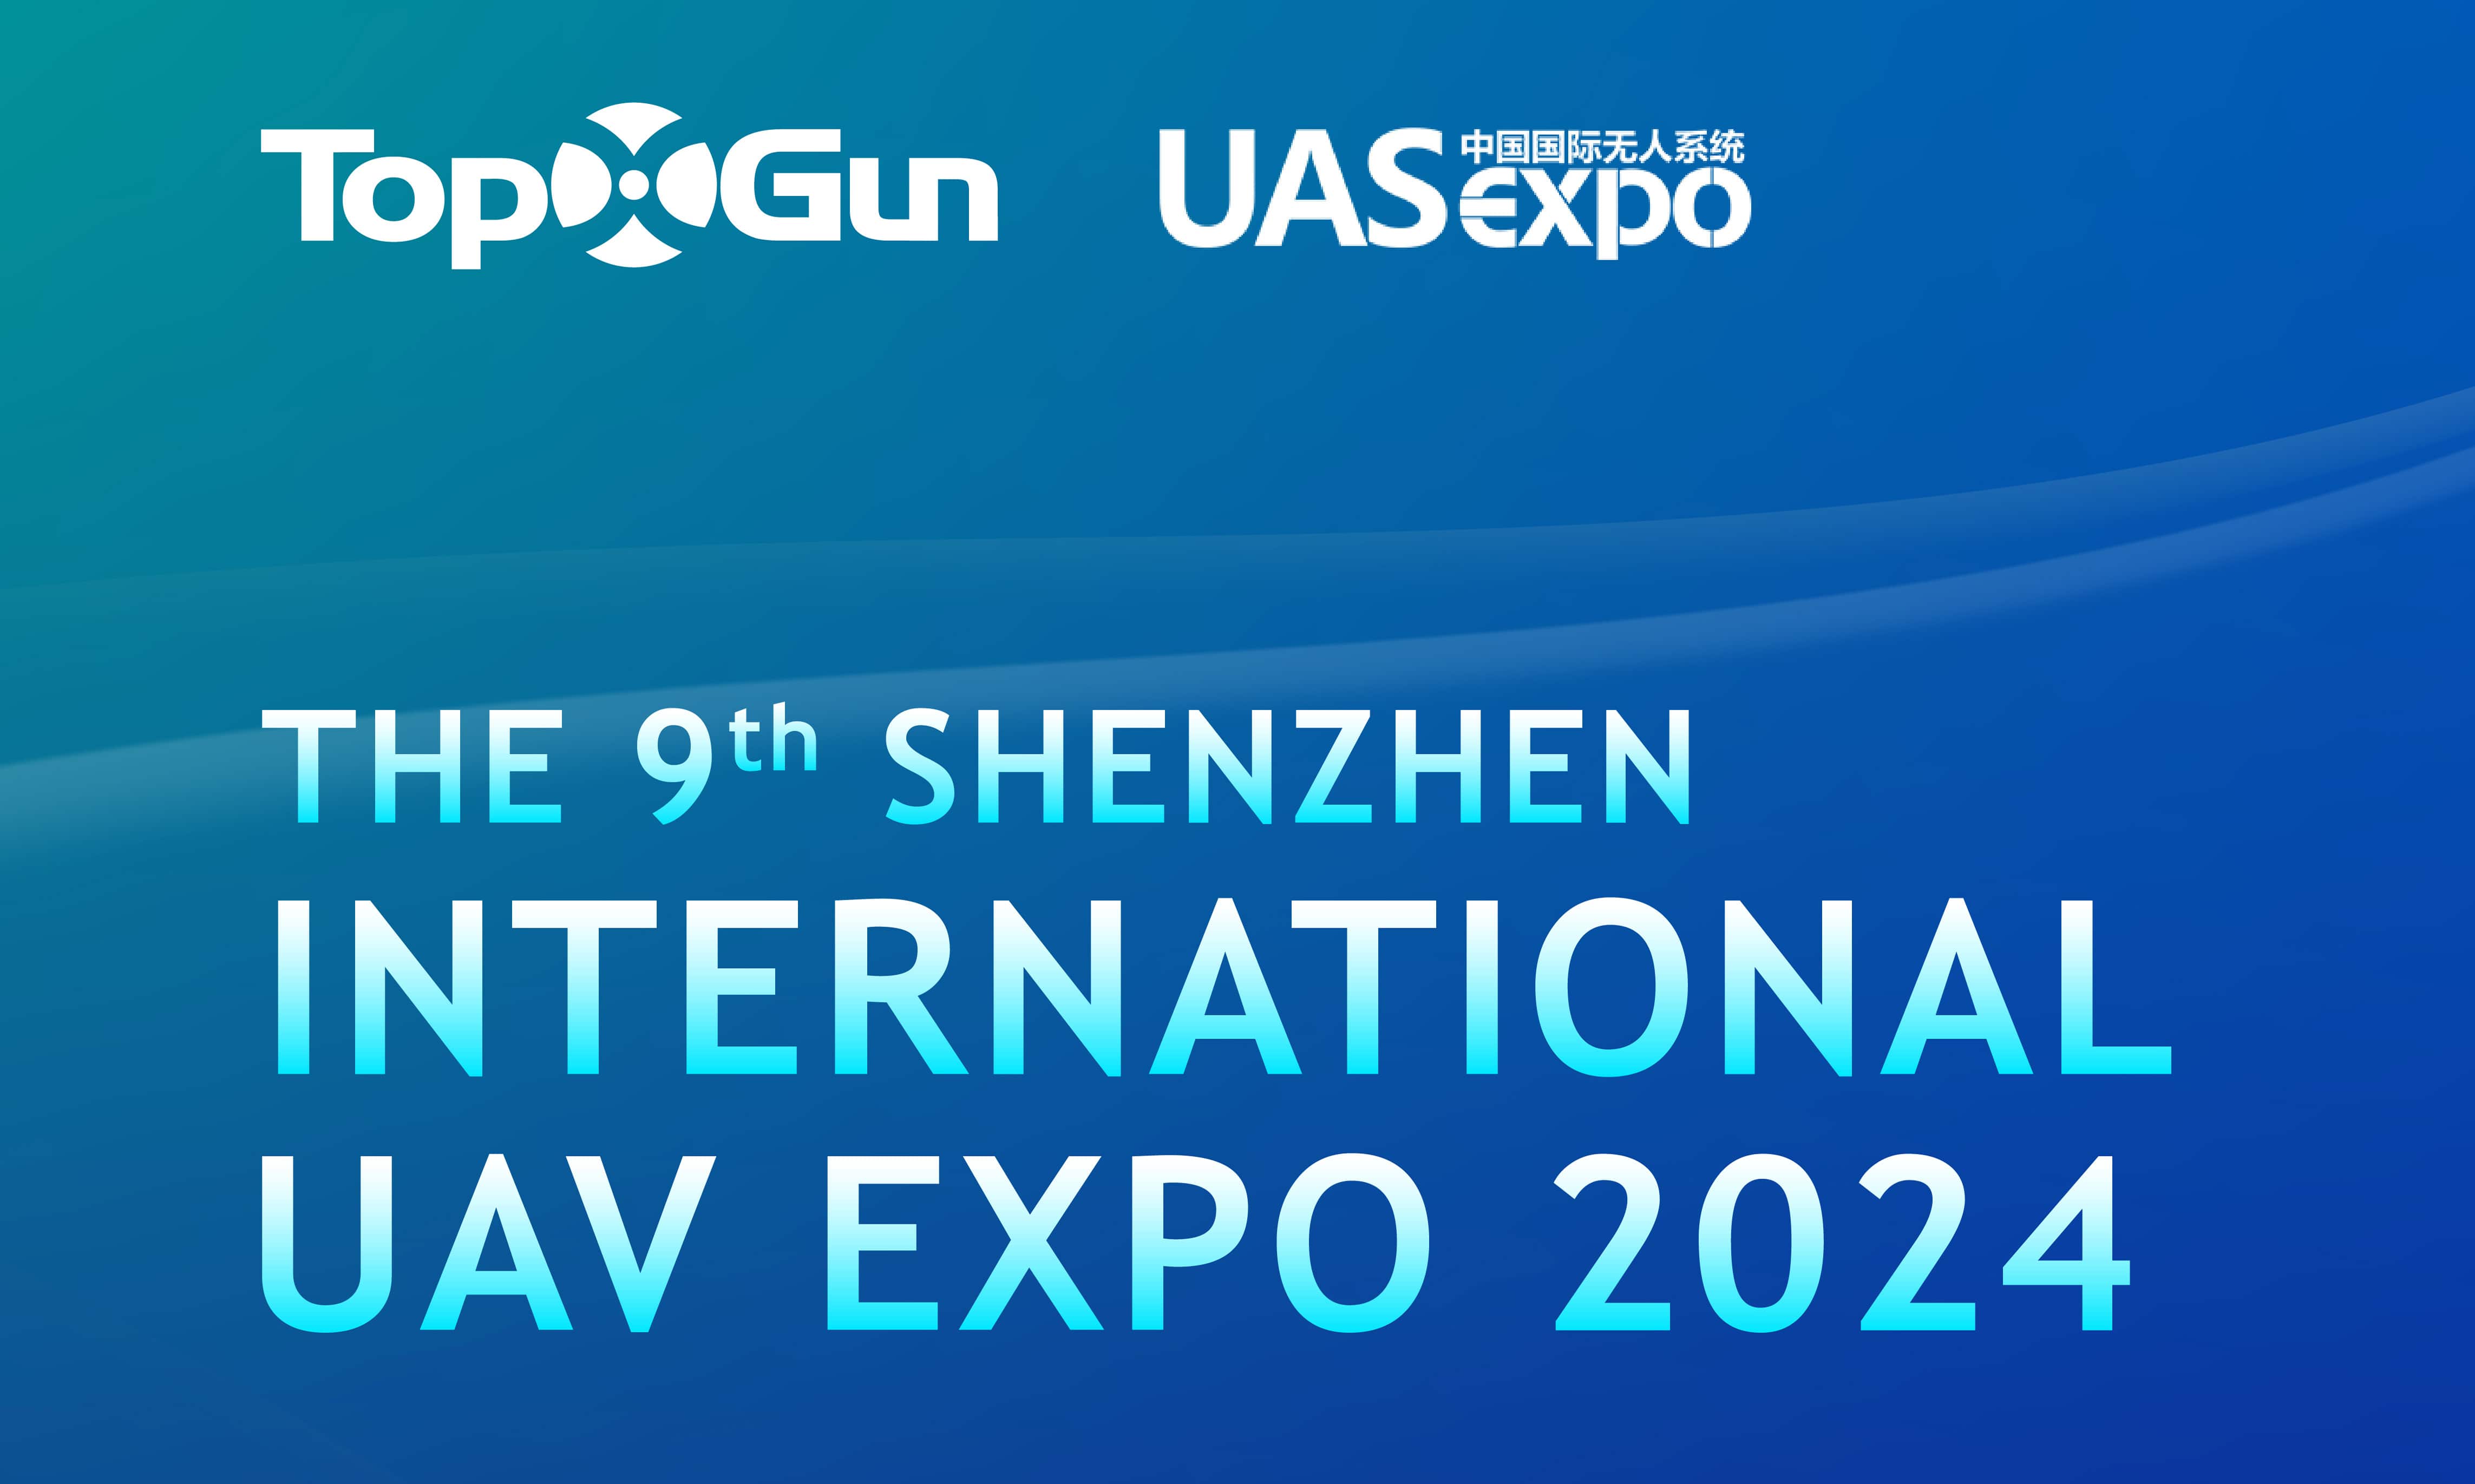 Junte-se a nós na 9ª Shenzhen International UAV Expo 2024 (UAS Expo)